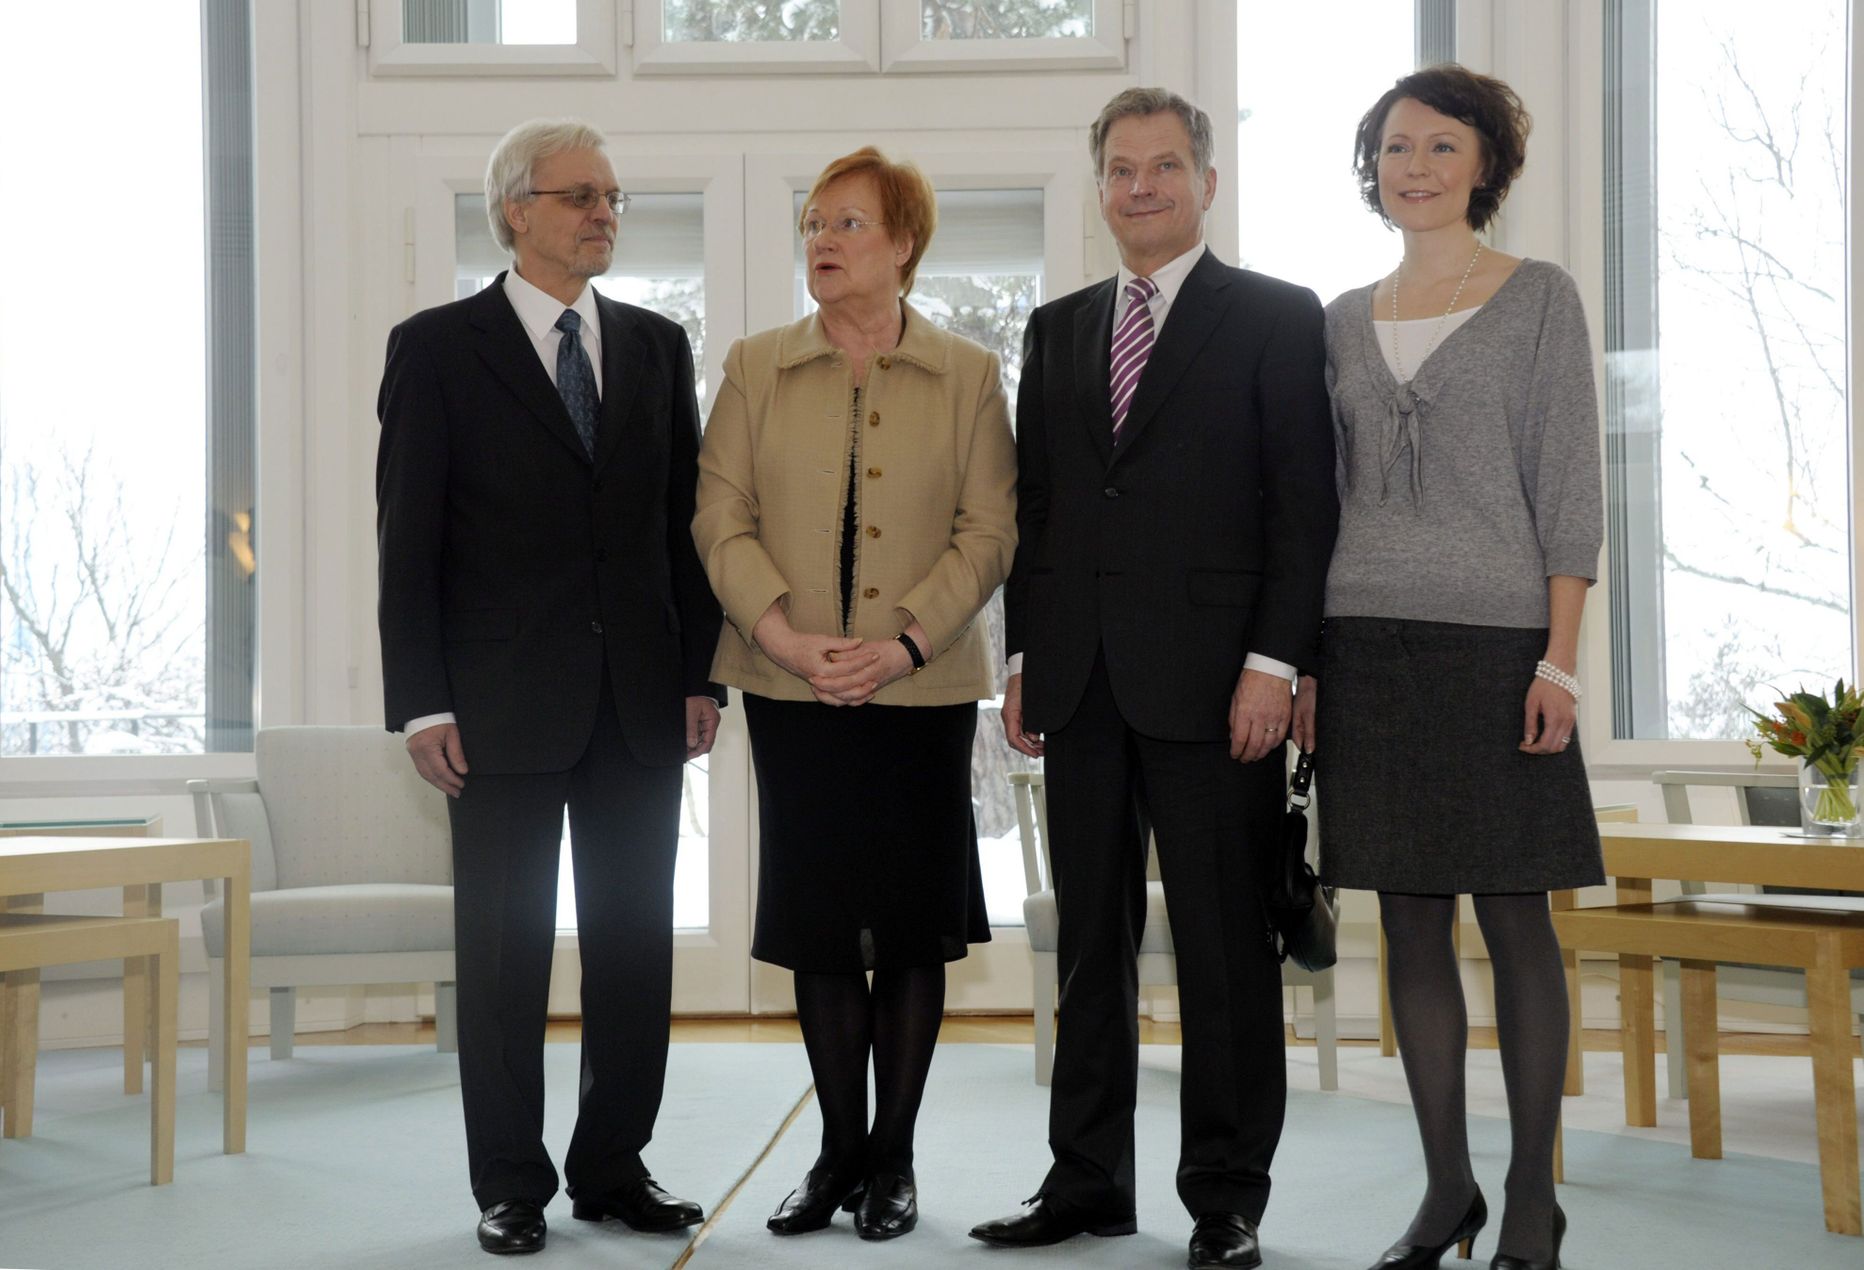 Soome presidendi Mäntyniemi residentsis kohtusid täna praegune riigipea Tarja Halonen ja tulevane riigipea Sauli Niinistö. Paremal on tulevane esileedi Jenni Haukio ja vasakul Haloneni abikaasa doktor Pentti Arajärvi.